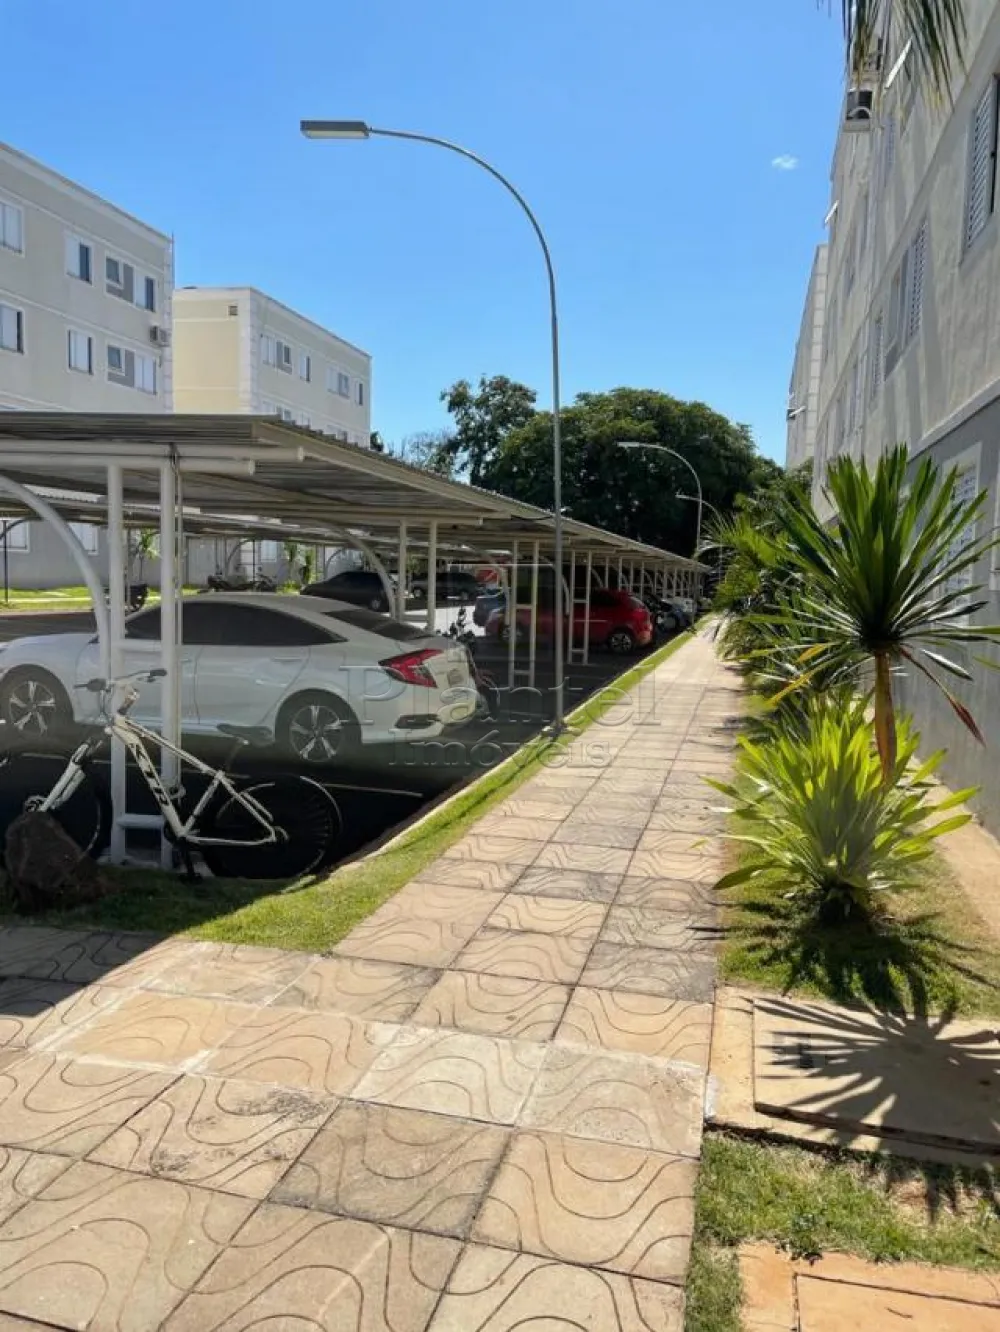 Imobiliária Ribeirão Preto - Plantel Imóveis - Apartamento - Jardim Silvio Passalacqua - Ribeirão Preto